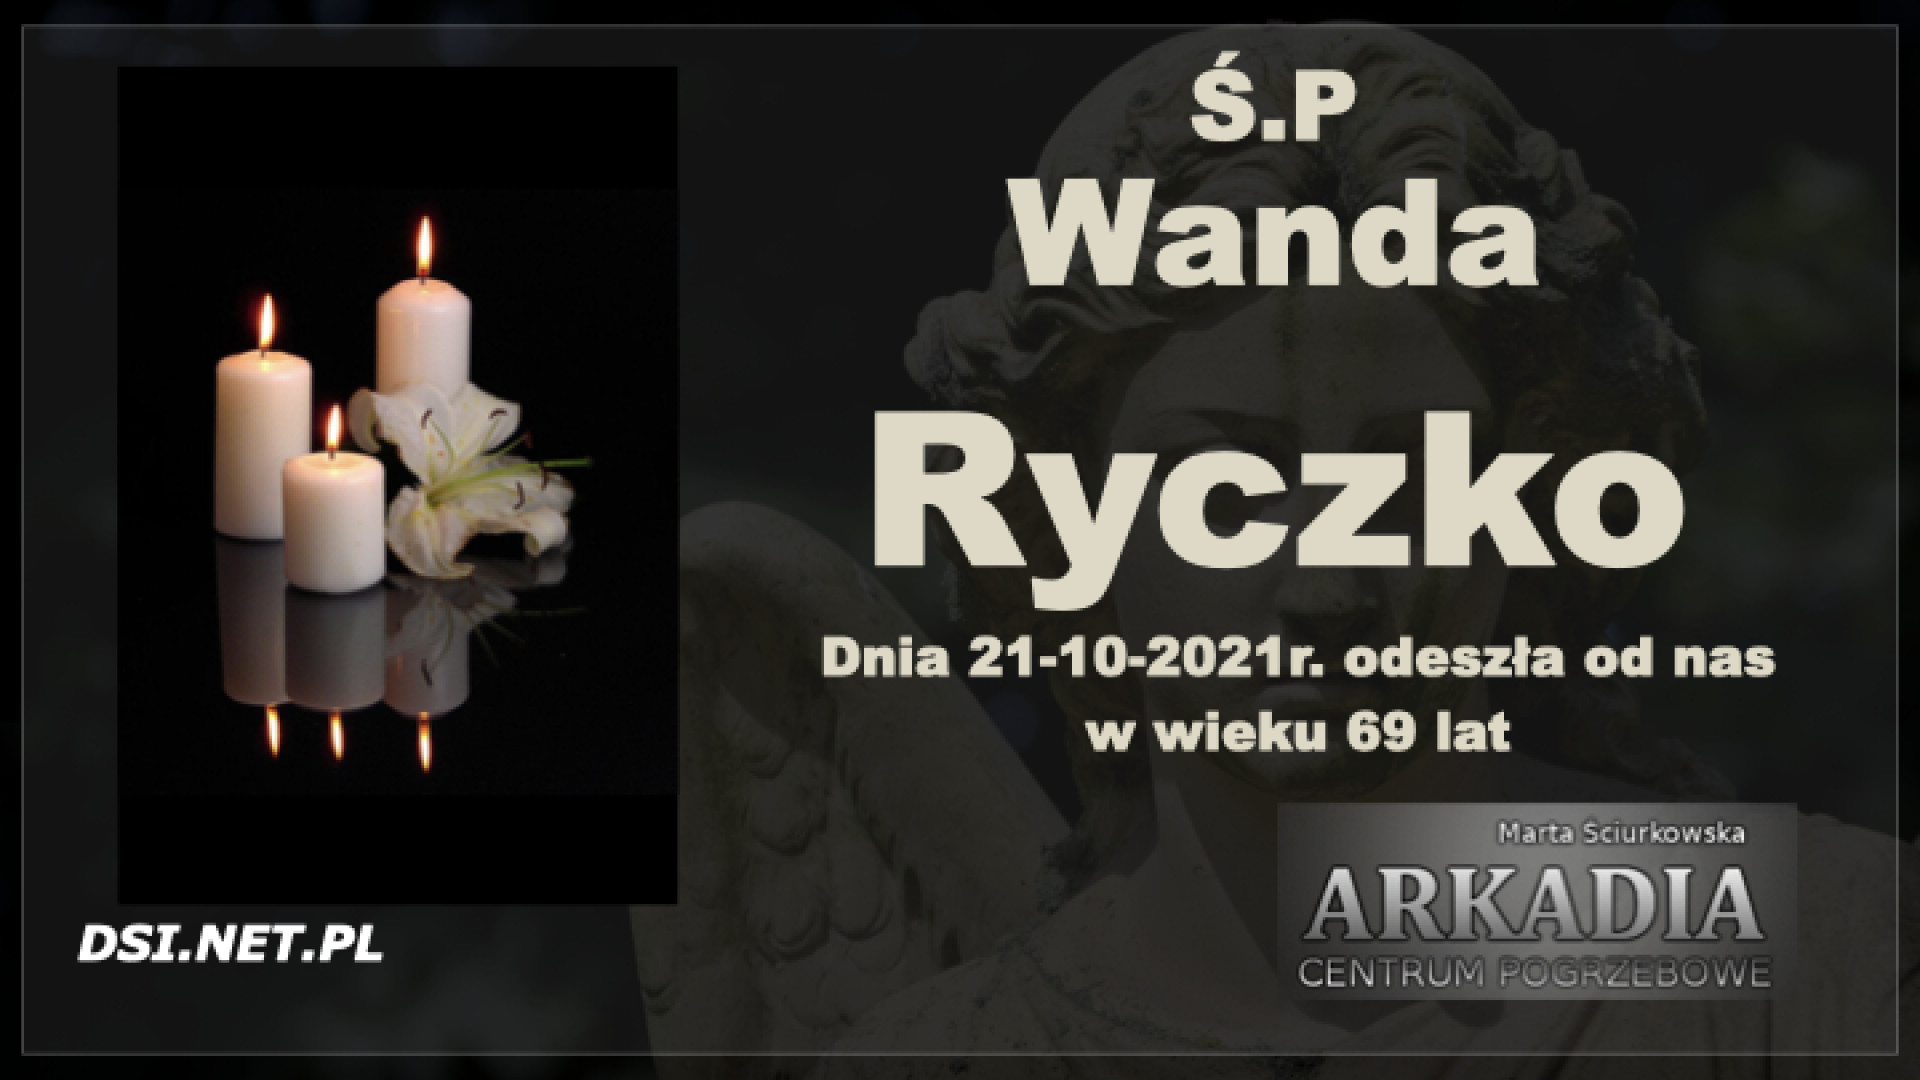 Ś.P. Wanda Ryczko